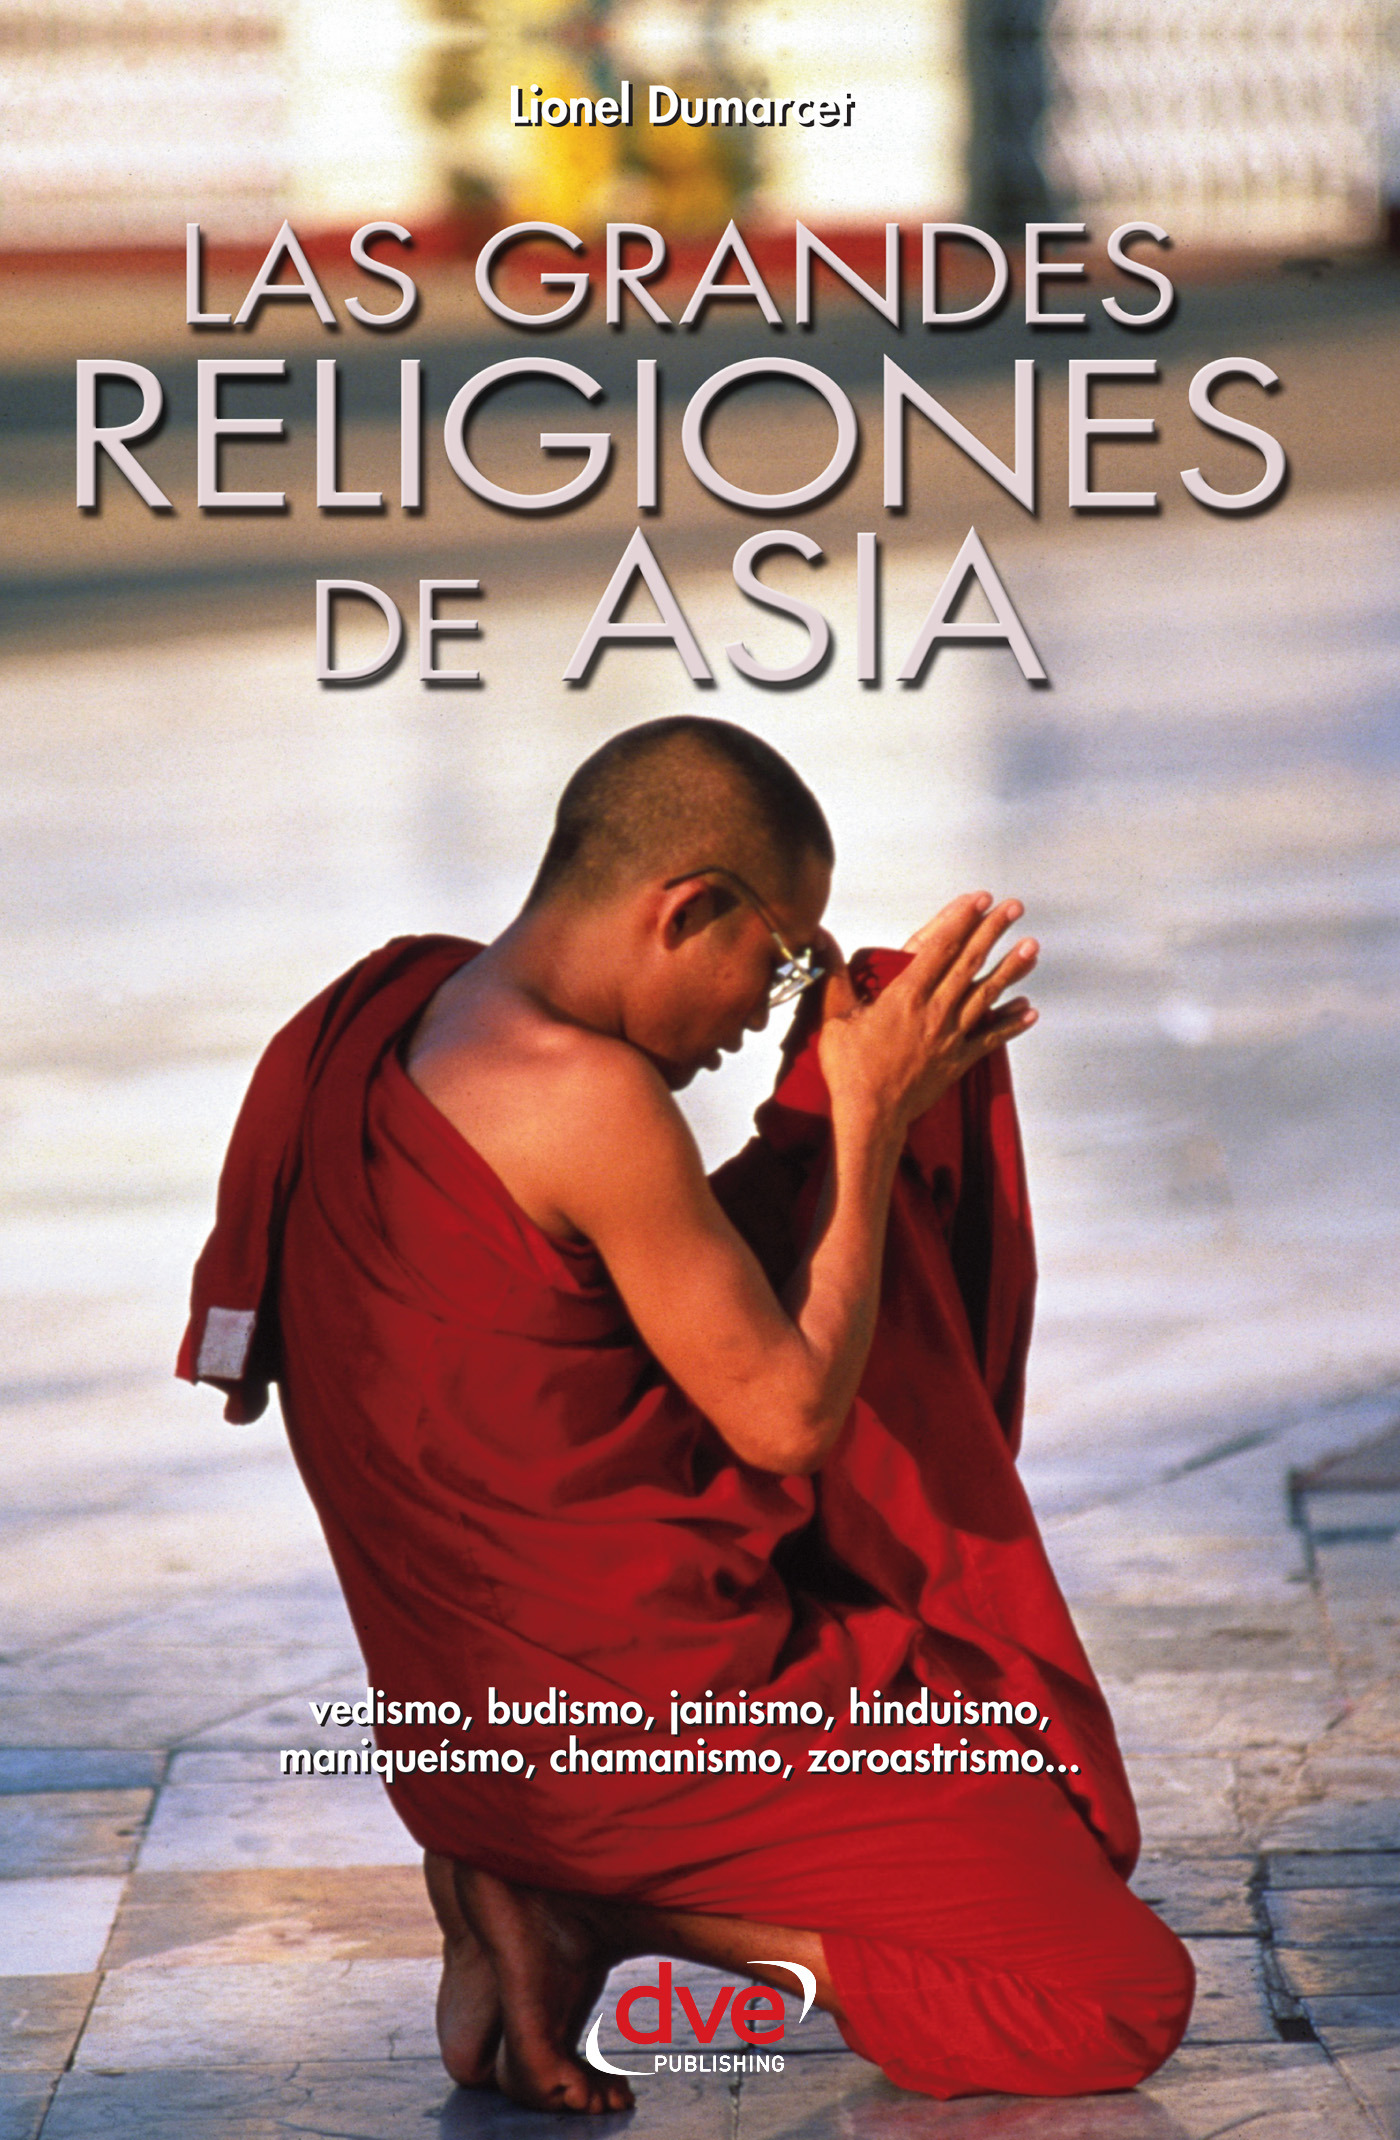 Dumarcet, Lionel - Las grandes religiones de Asia… vedismo, budismo, jainismo, hinduismo, maniqueísmo, chamanismo, zoroastrismo…, ebook